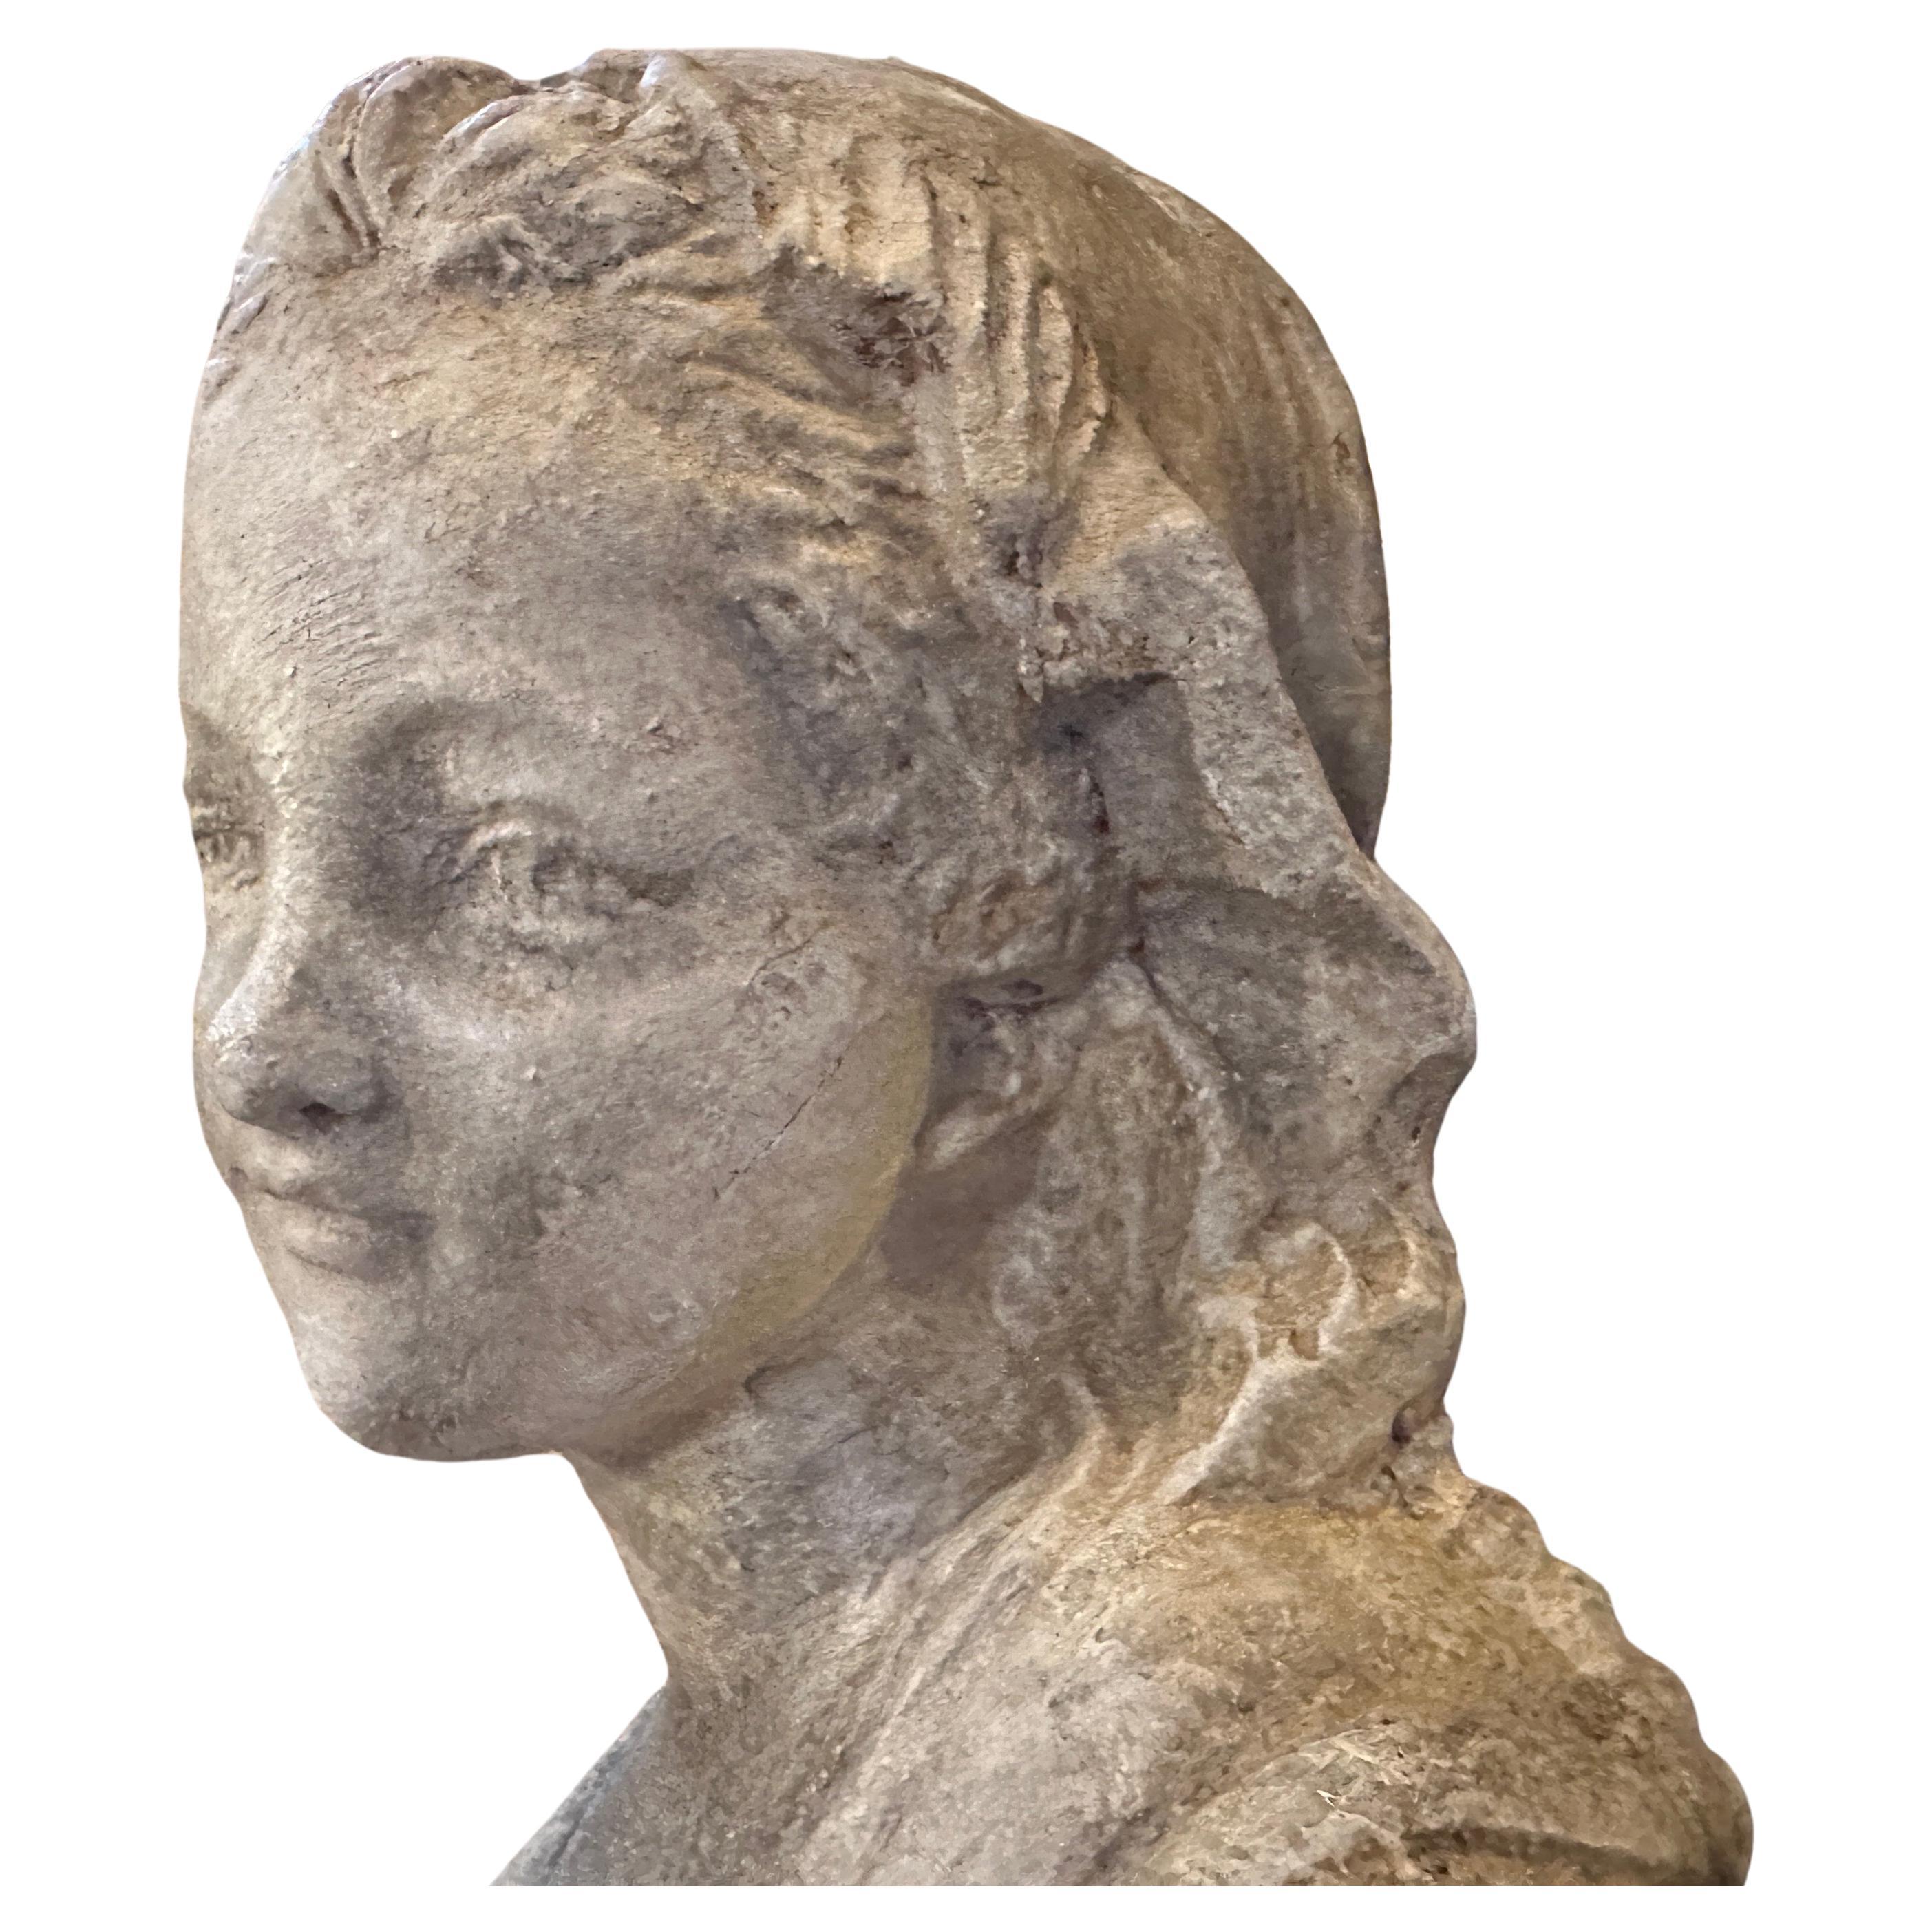 Eine Terrakotta-Skulptur, die in der ersten Hälfte des 20. Jahrhunderts in Sizilien handgefertigt wurde, mit originaler Patina und Gebrauchs- und Altersspuren. Die Terrakotta-Skulptur ist ein fesselndes Kunstwerk. Die Tatsache, dass sie ihre